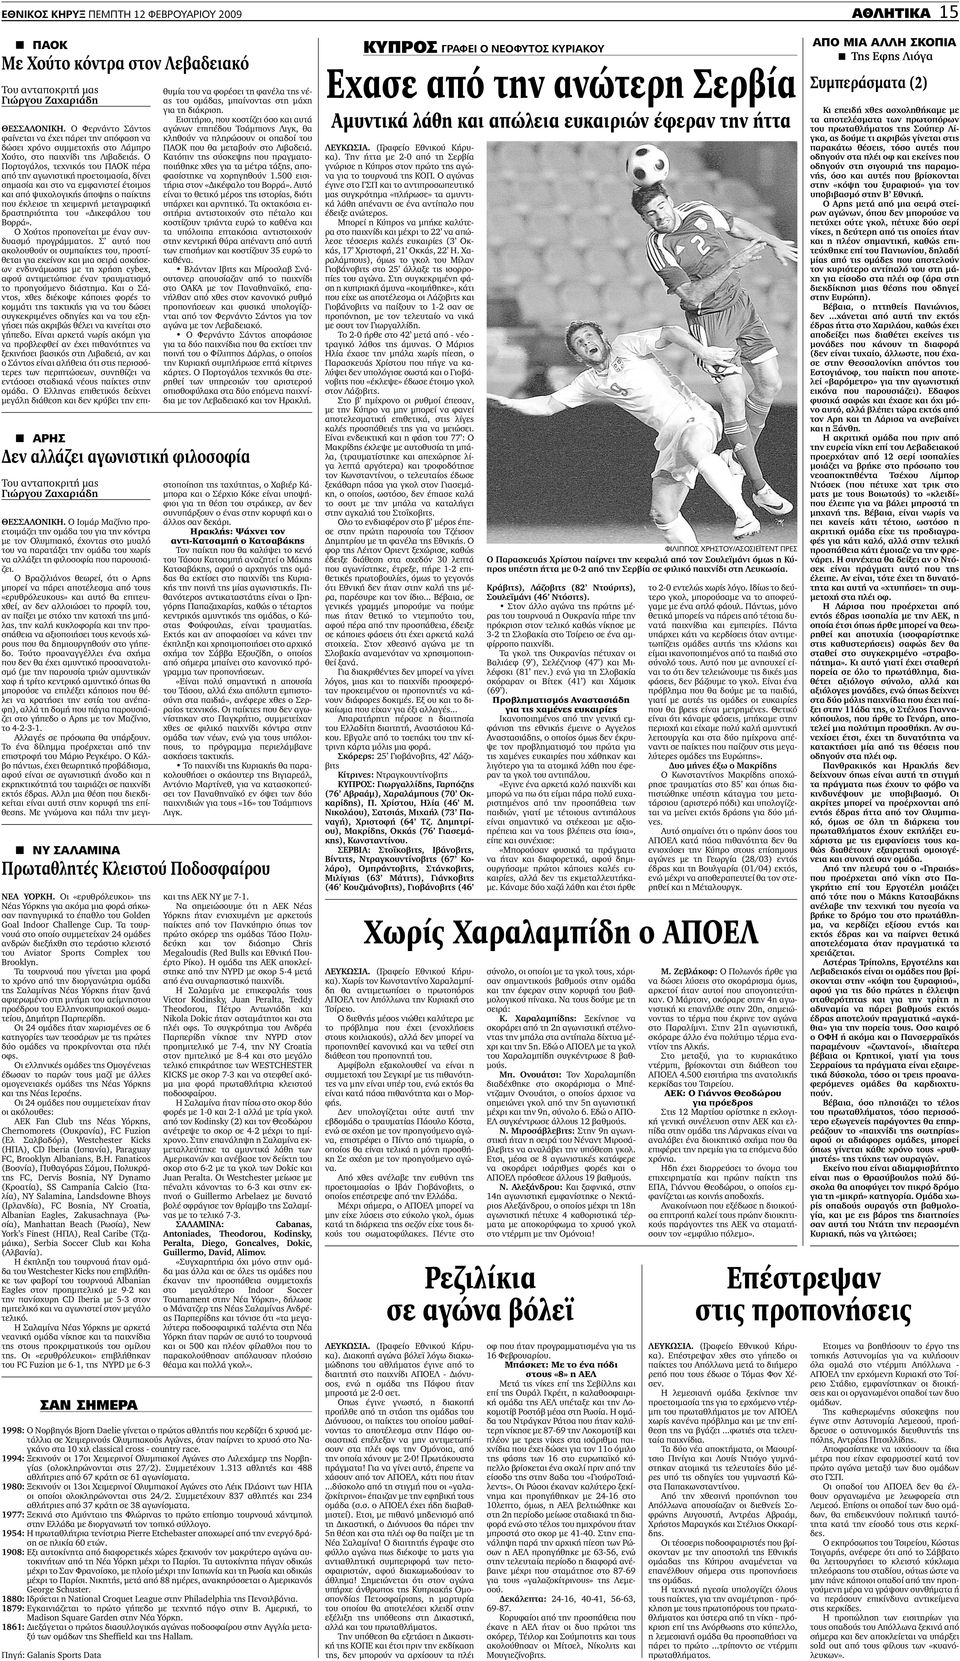 1994: Ξεκινούν οι 17οι Χειµερινοί Ολυµπιακοί Αγώνες στο Λιλεχάµερ της Νορβηγίας (ολοκληρώνονται στις 27/2). Συµµετέχουν 1.313 αθλητές και 488 αθλήτριες από 67 κράτη σε 61 αγωνίσµατα.